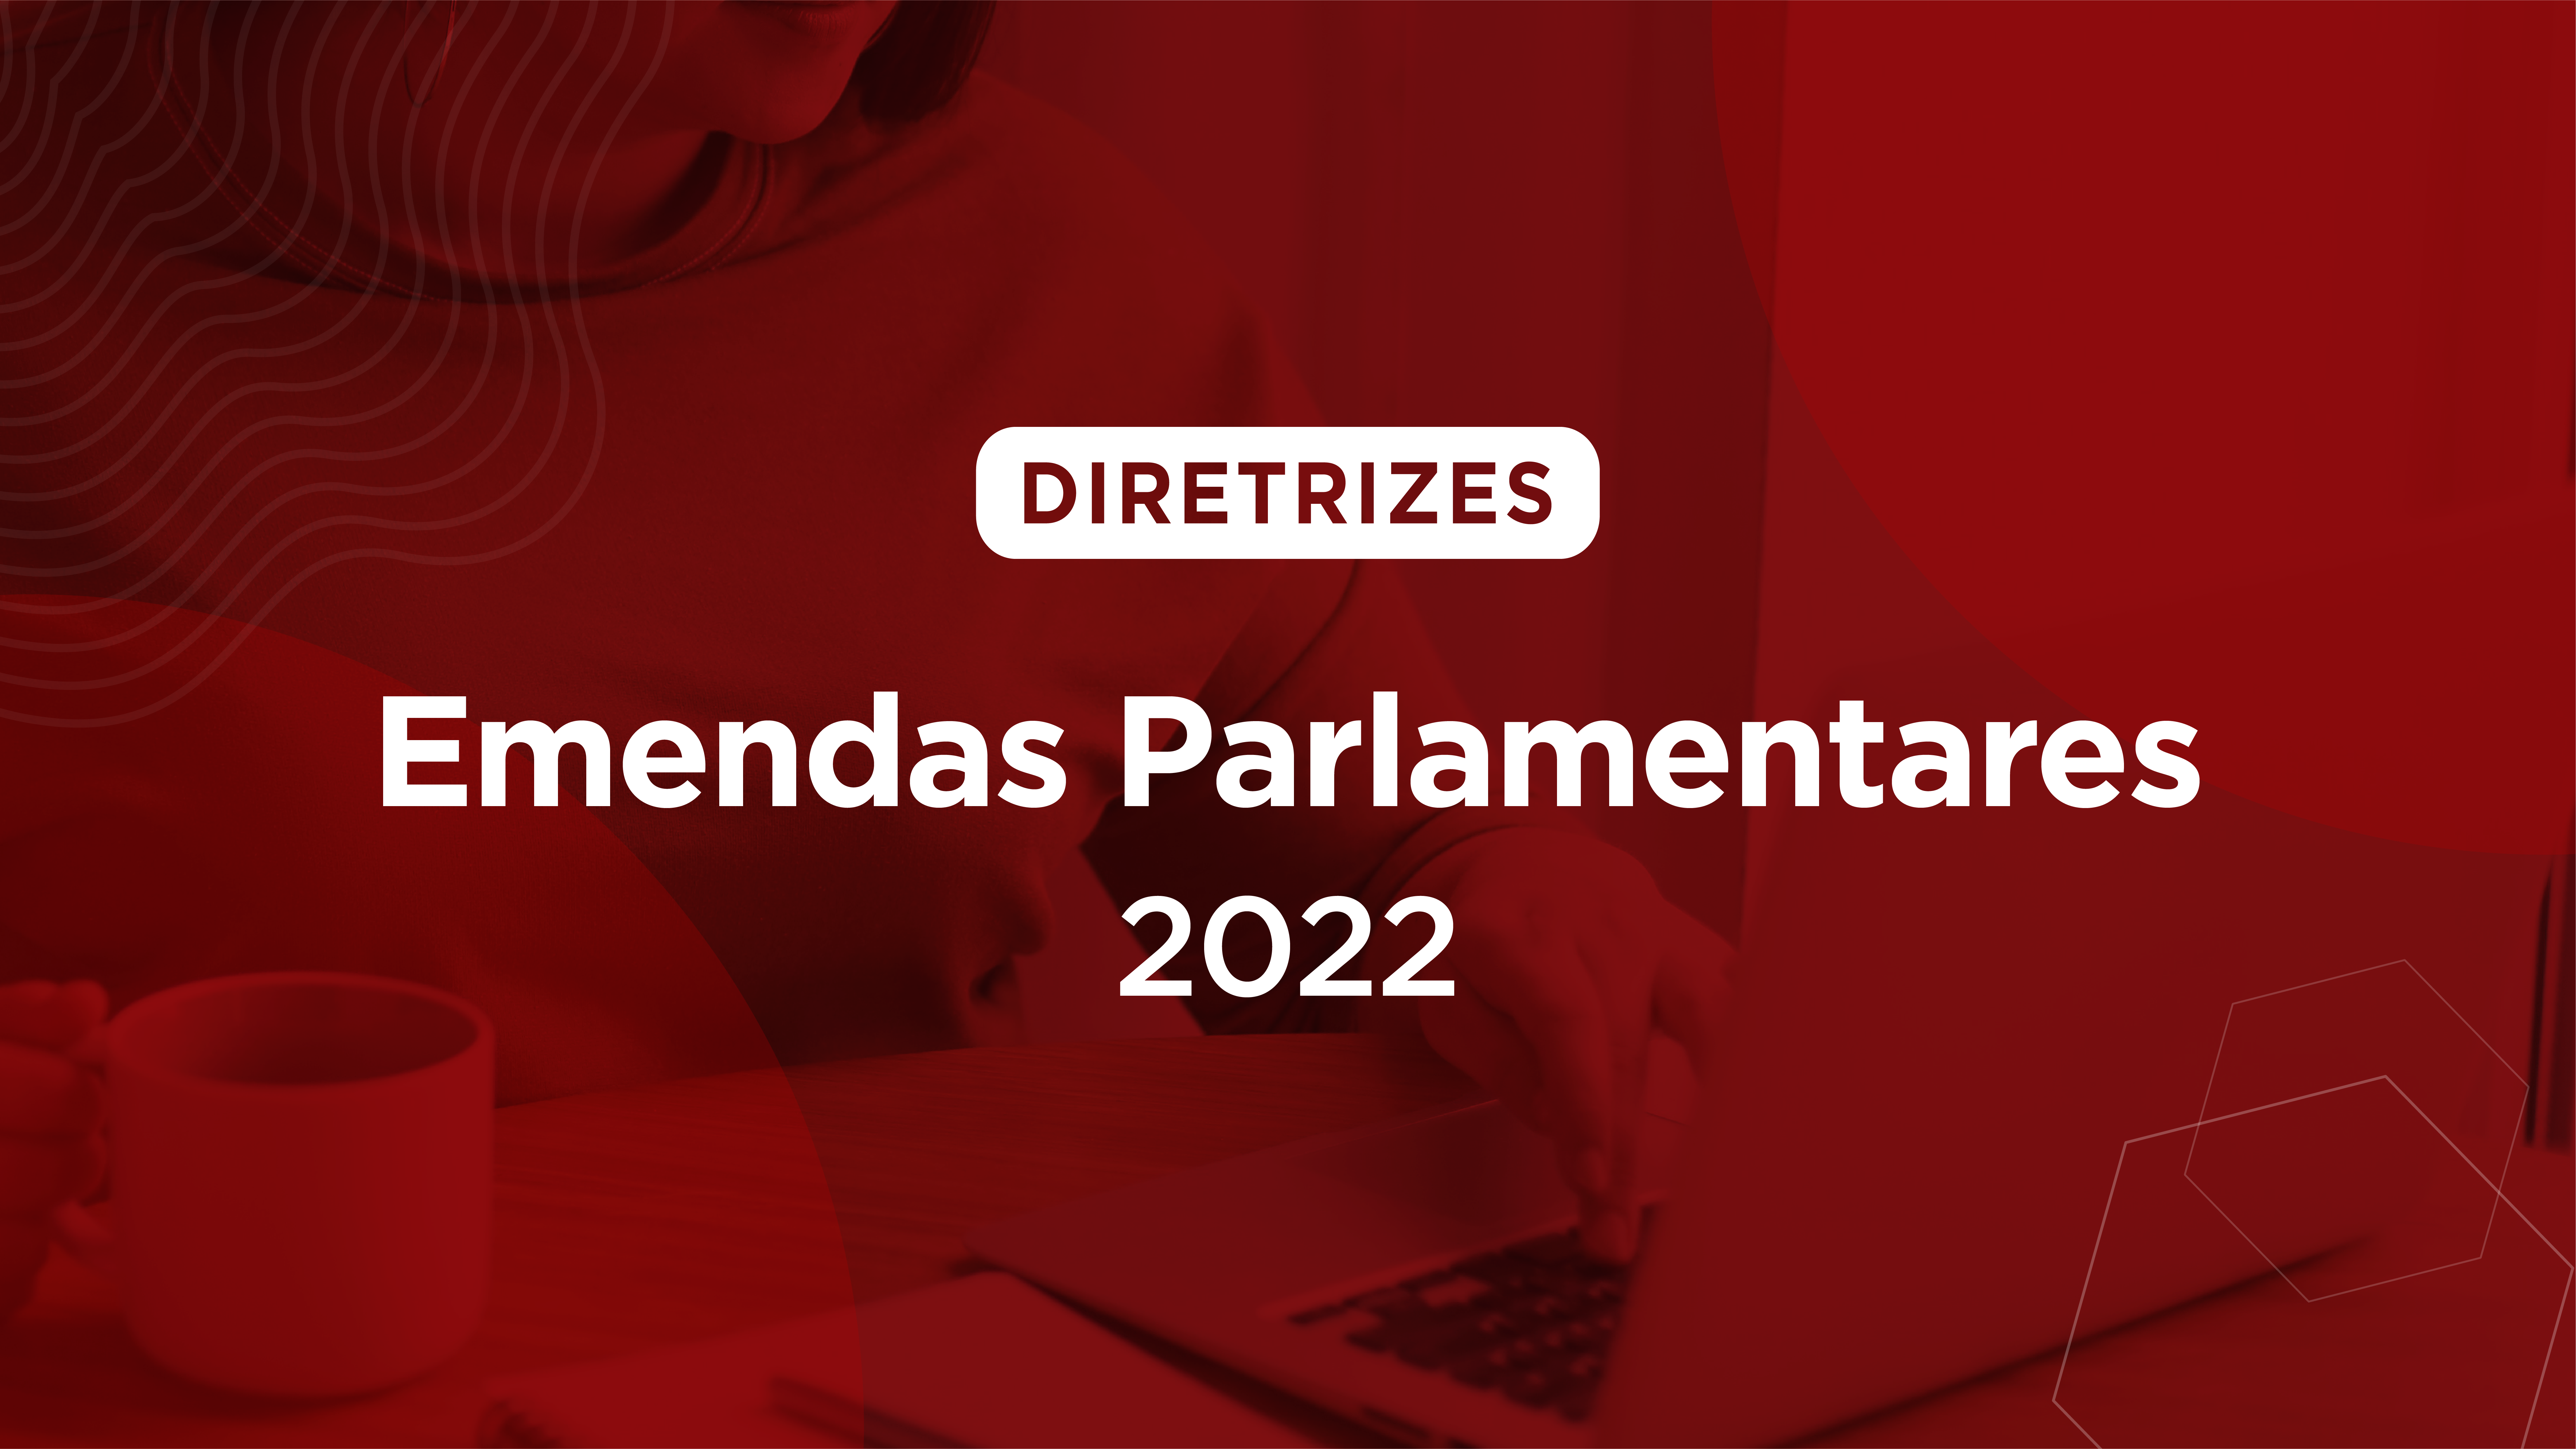 Emendas Parlamentares 2022